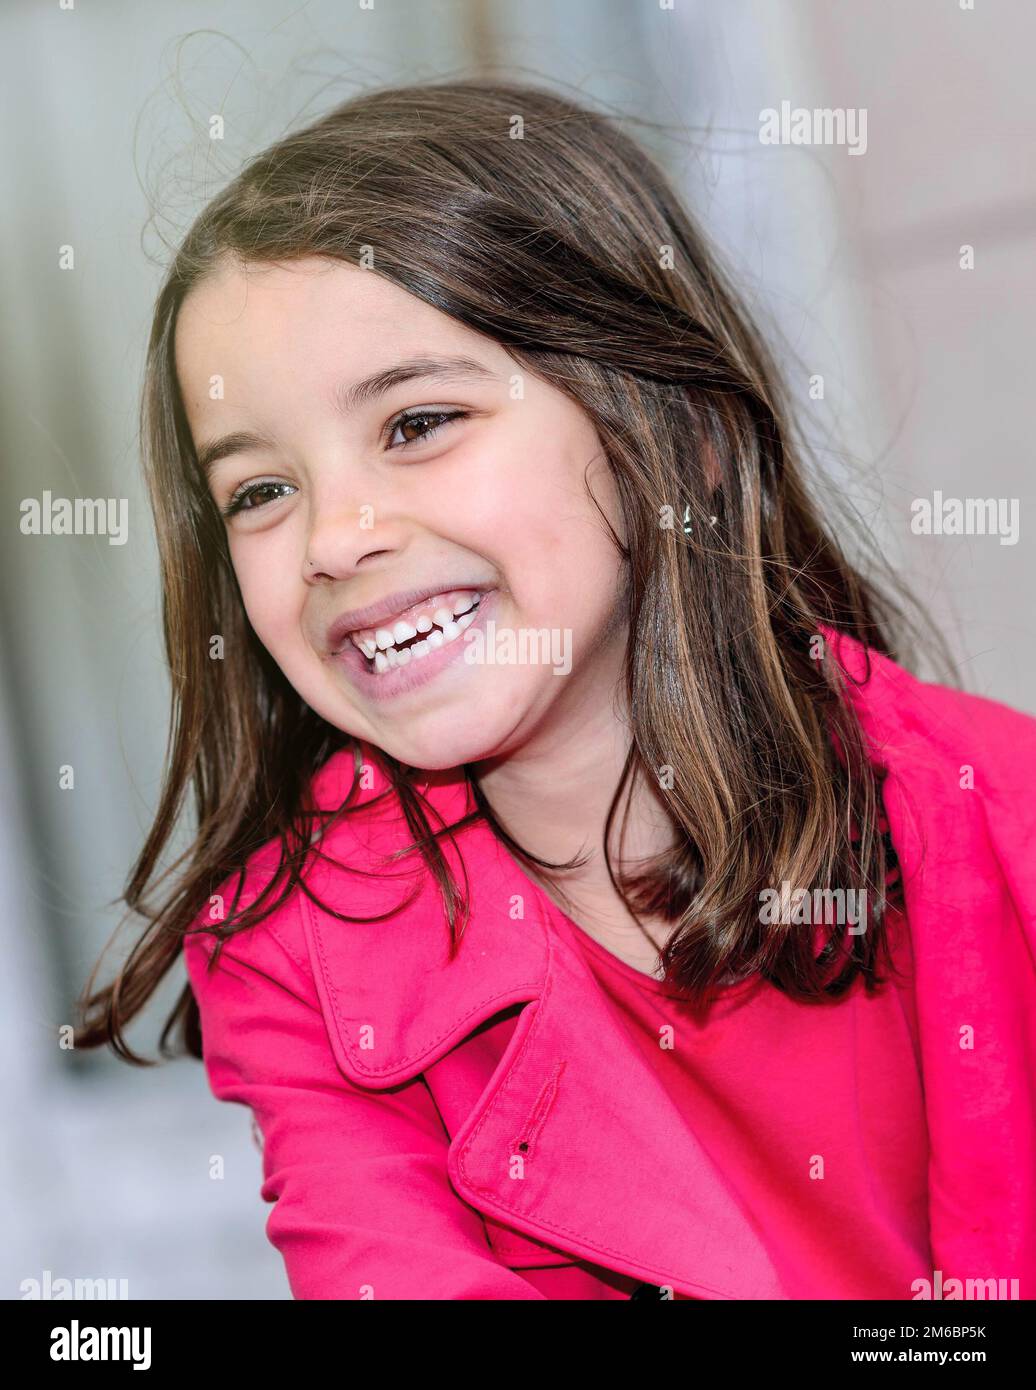 Carino ritratto di una bella ragazza piccola felice Foto Stock